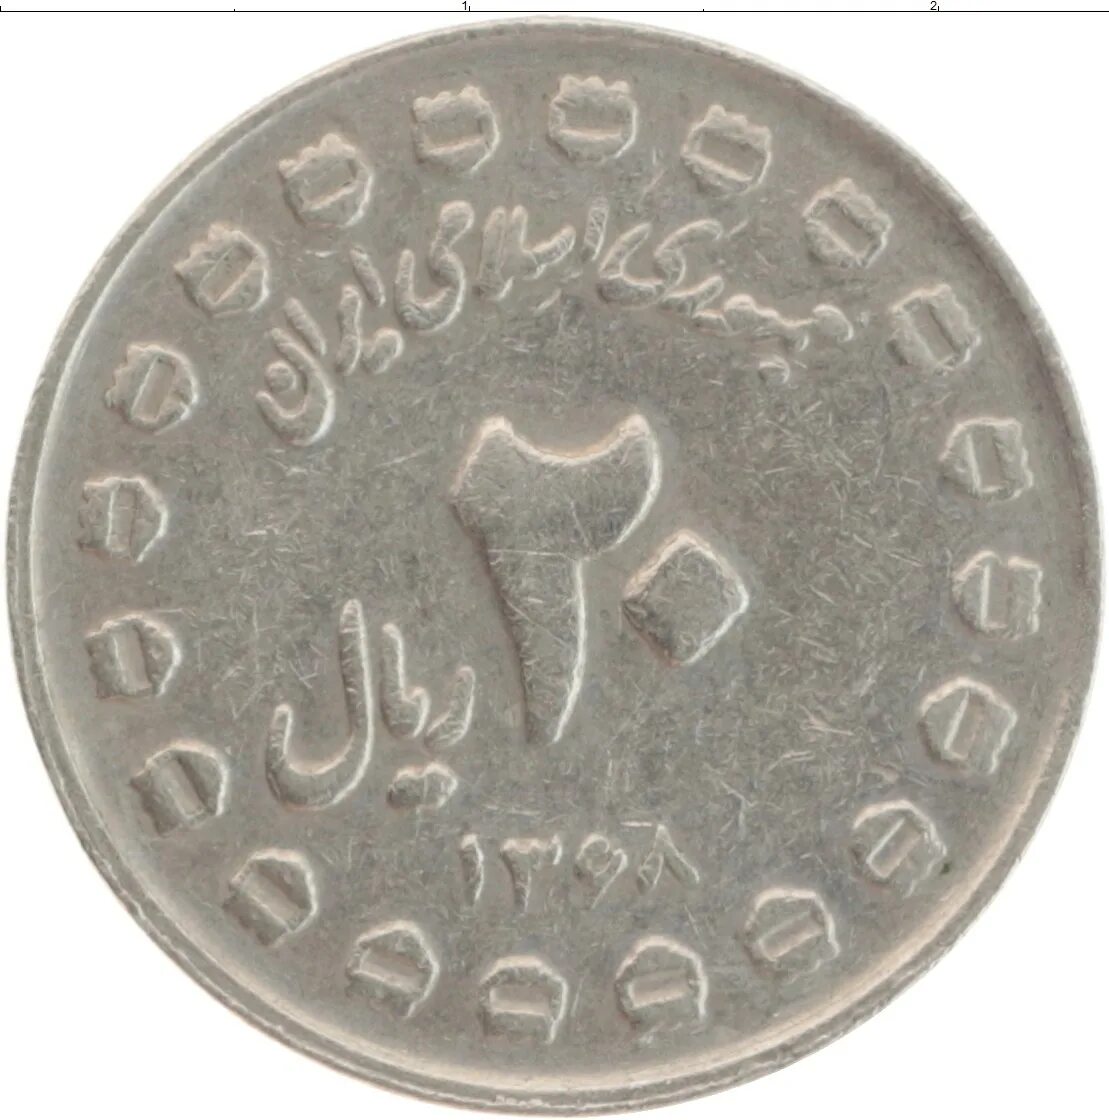 Иранская монета 5 букв. 20 Иран монета. 20 Иранский риал монета. Иранский 20 рублей. Монета Иран 1989 г.